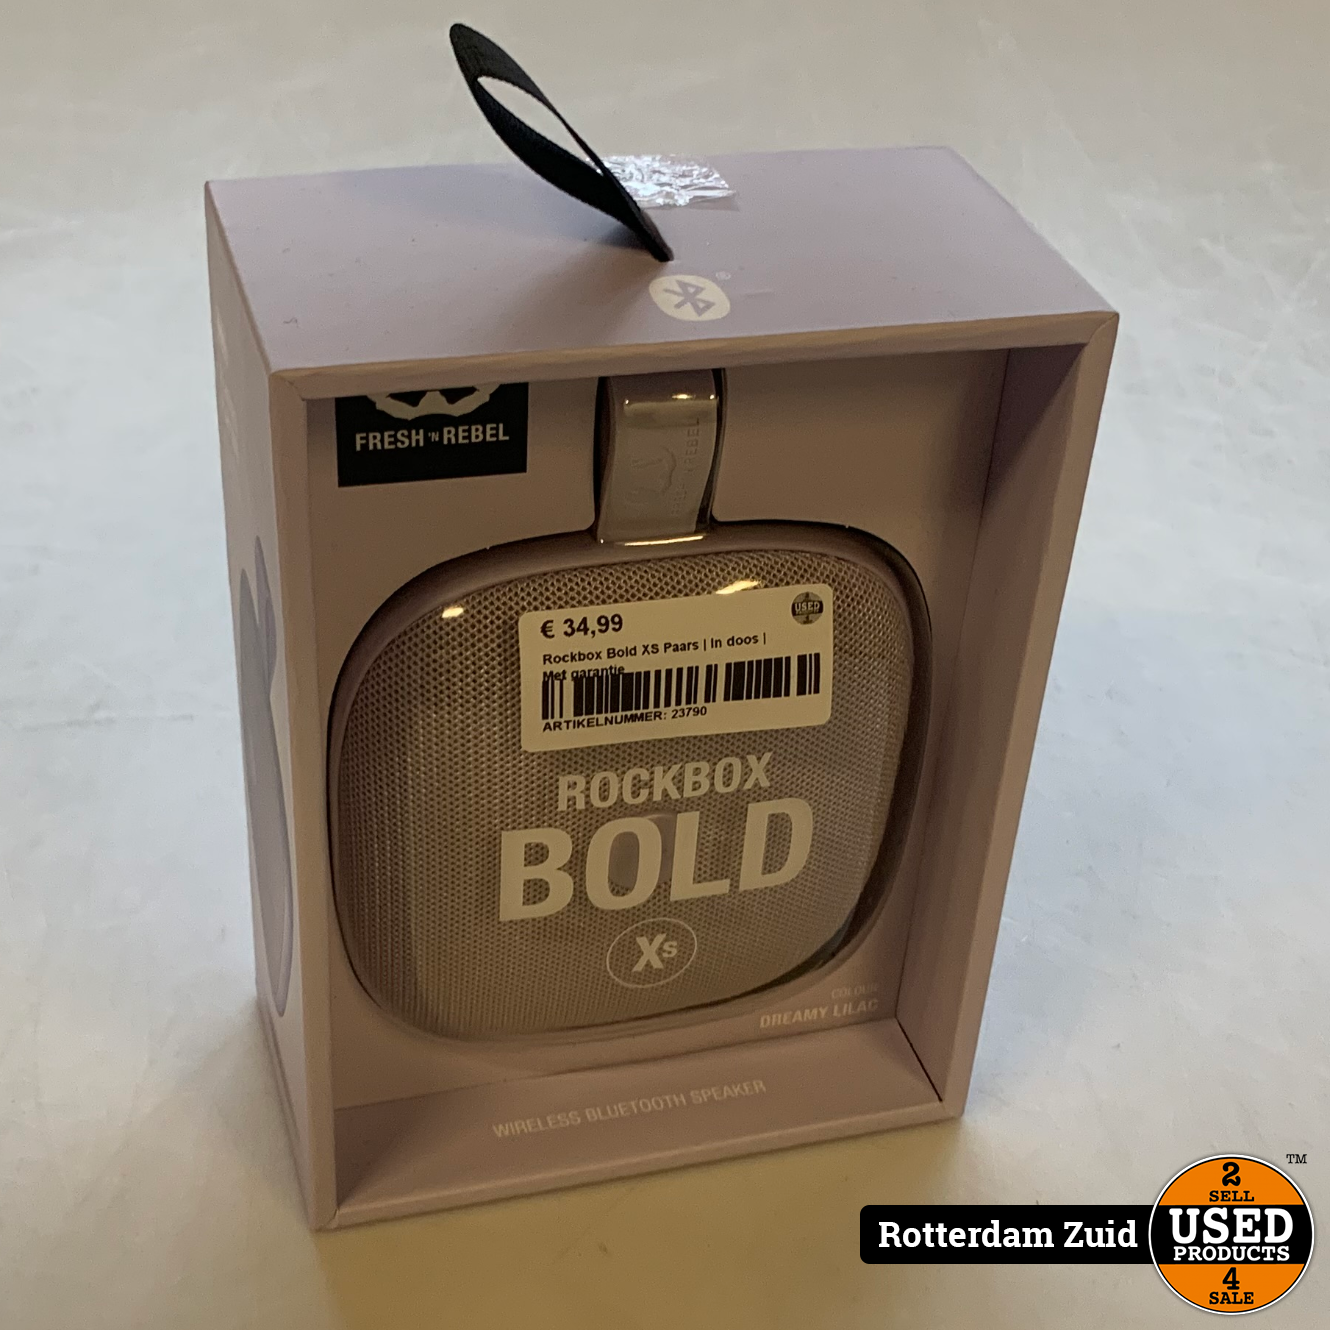 Rockbox Bold XS Paars | In doos | Met garantie - Used Products Rotterdam  Zuid | Lautsprecher